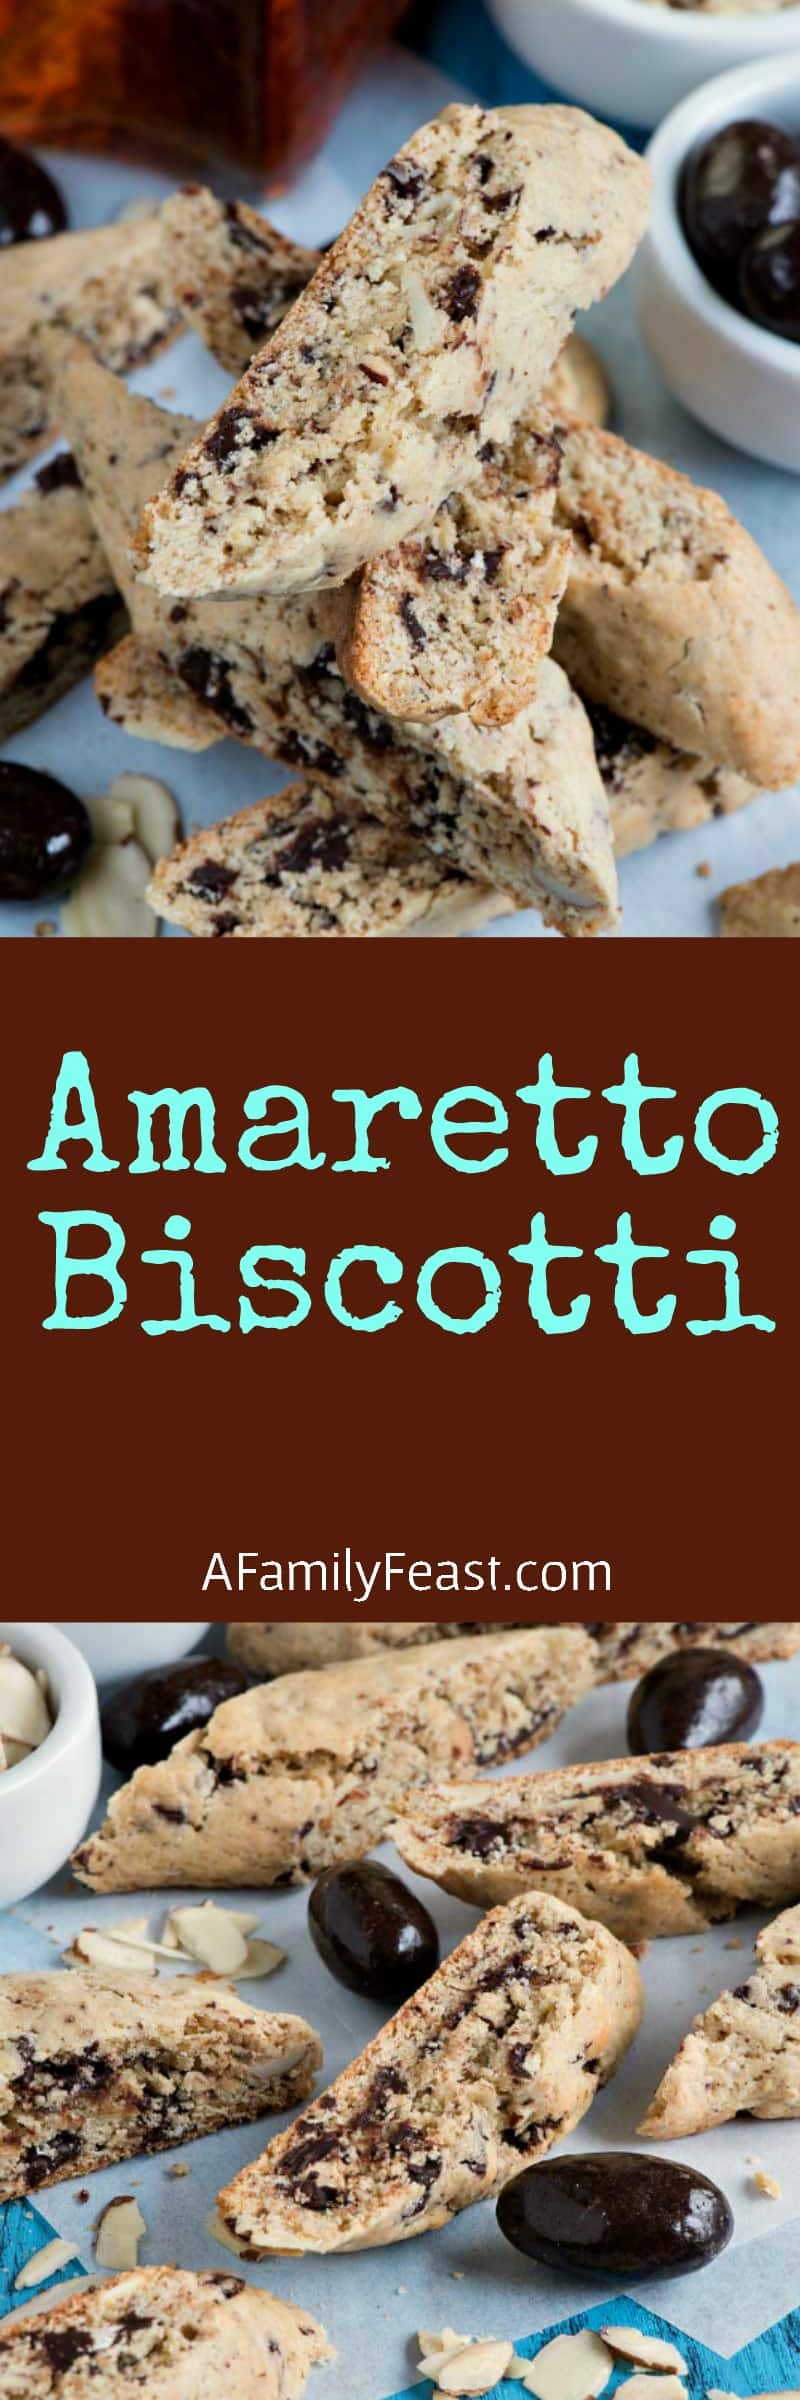 Amaretto Biscotti - Quick and easy to make with a uniquely delicious flavor. So good!